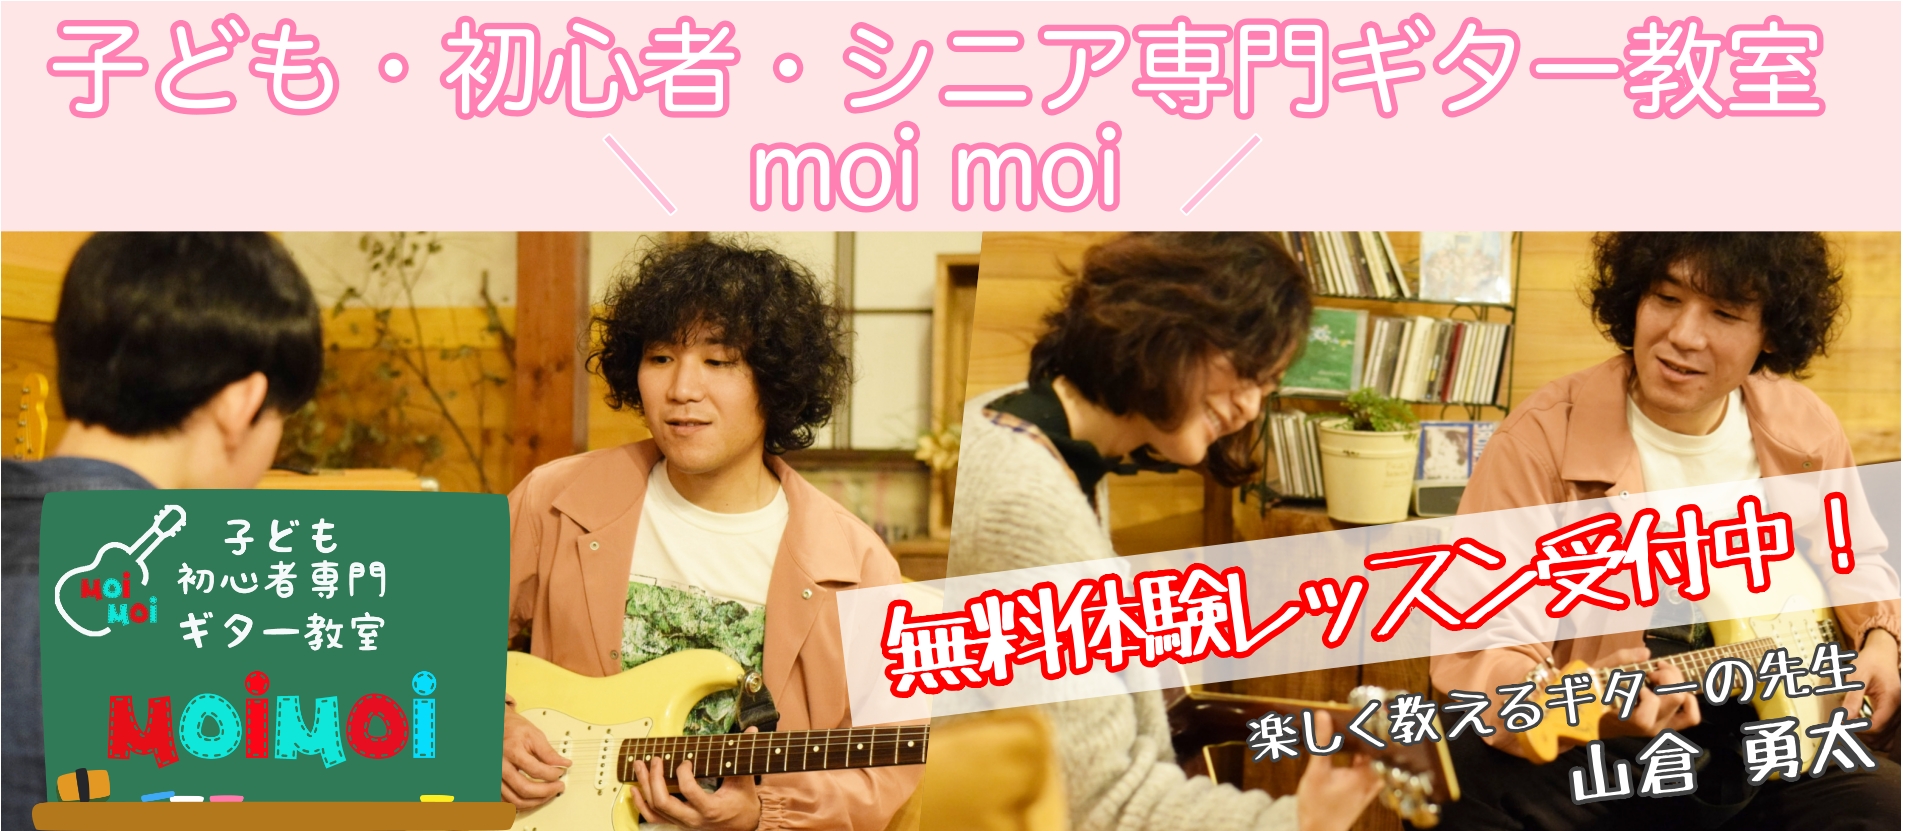 新潟の子ども・初心者・シニア専門ギター教室 moimoi